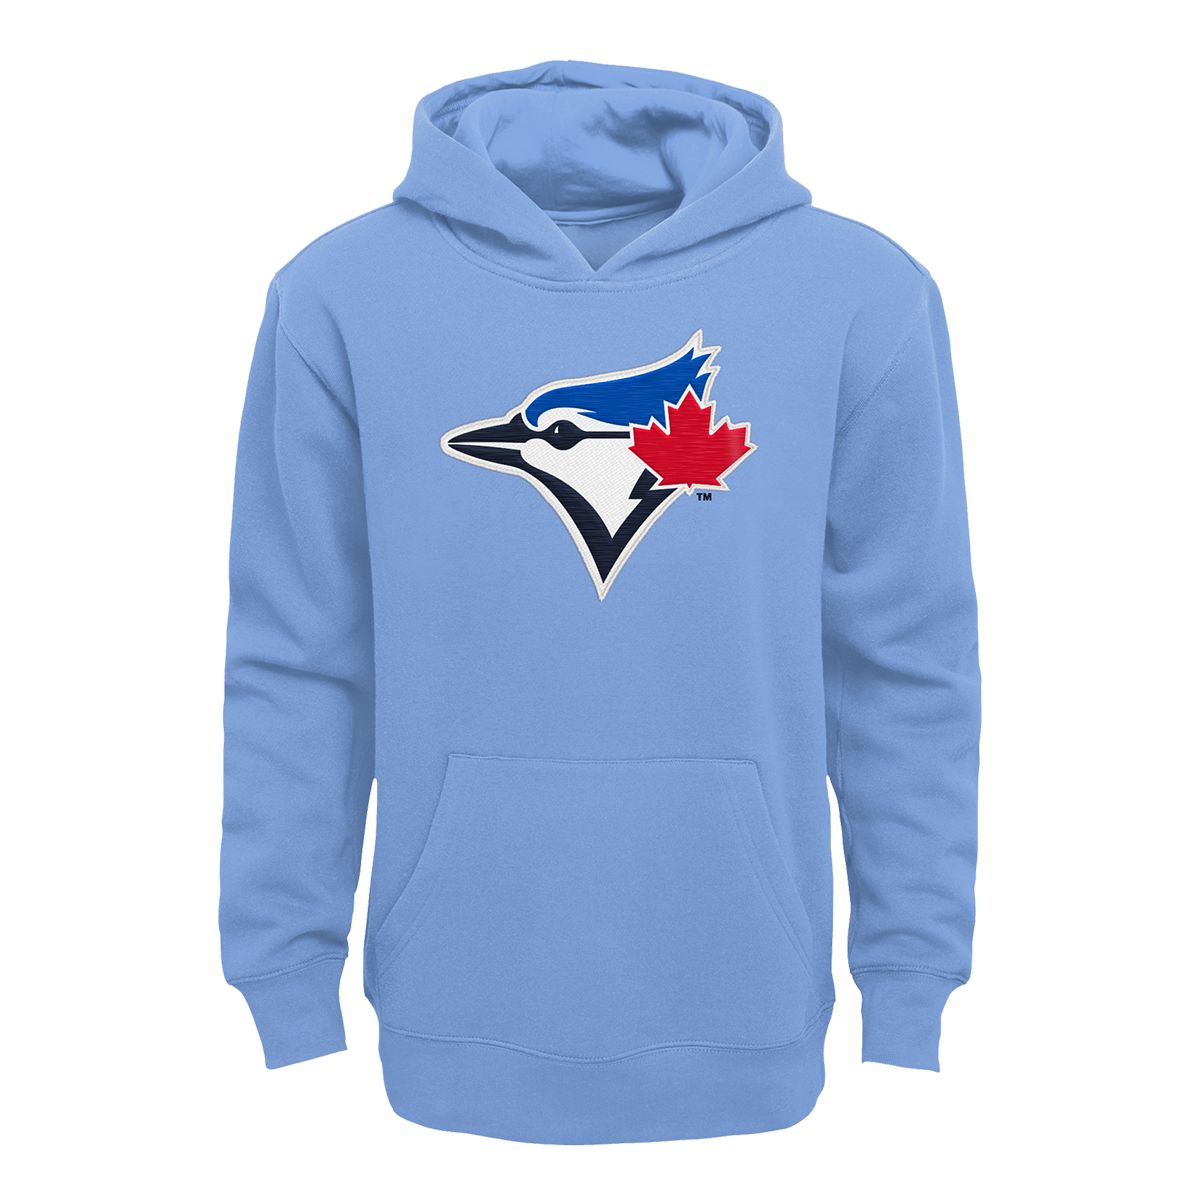 Toronto Blue Jays Sweatshirt, Blue Jays Hoodies, Blue Jays Fleece